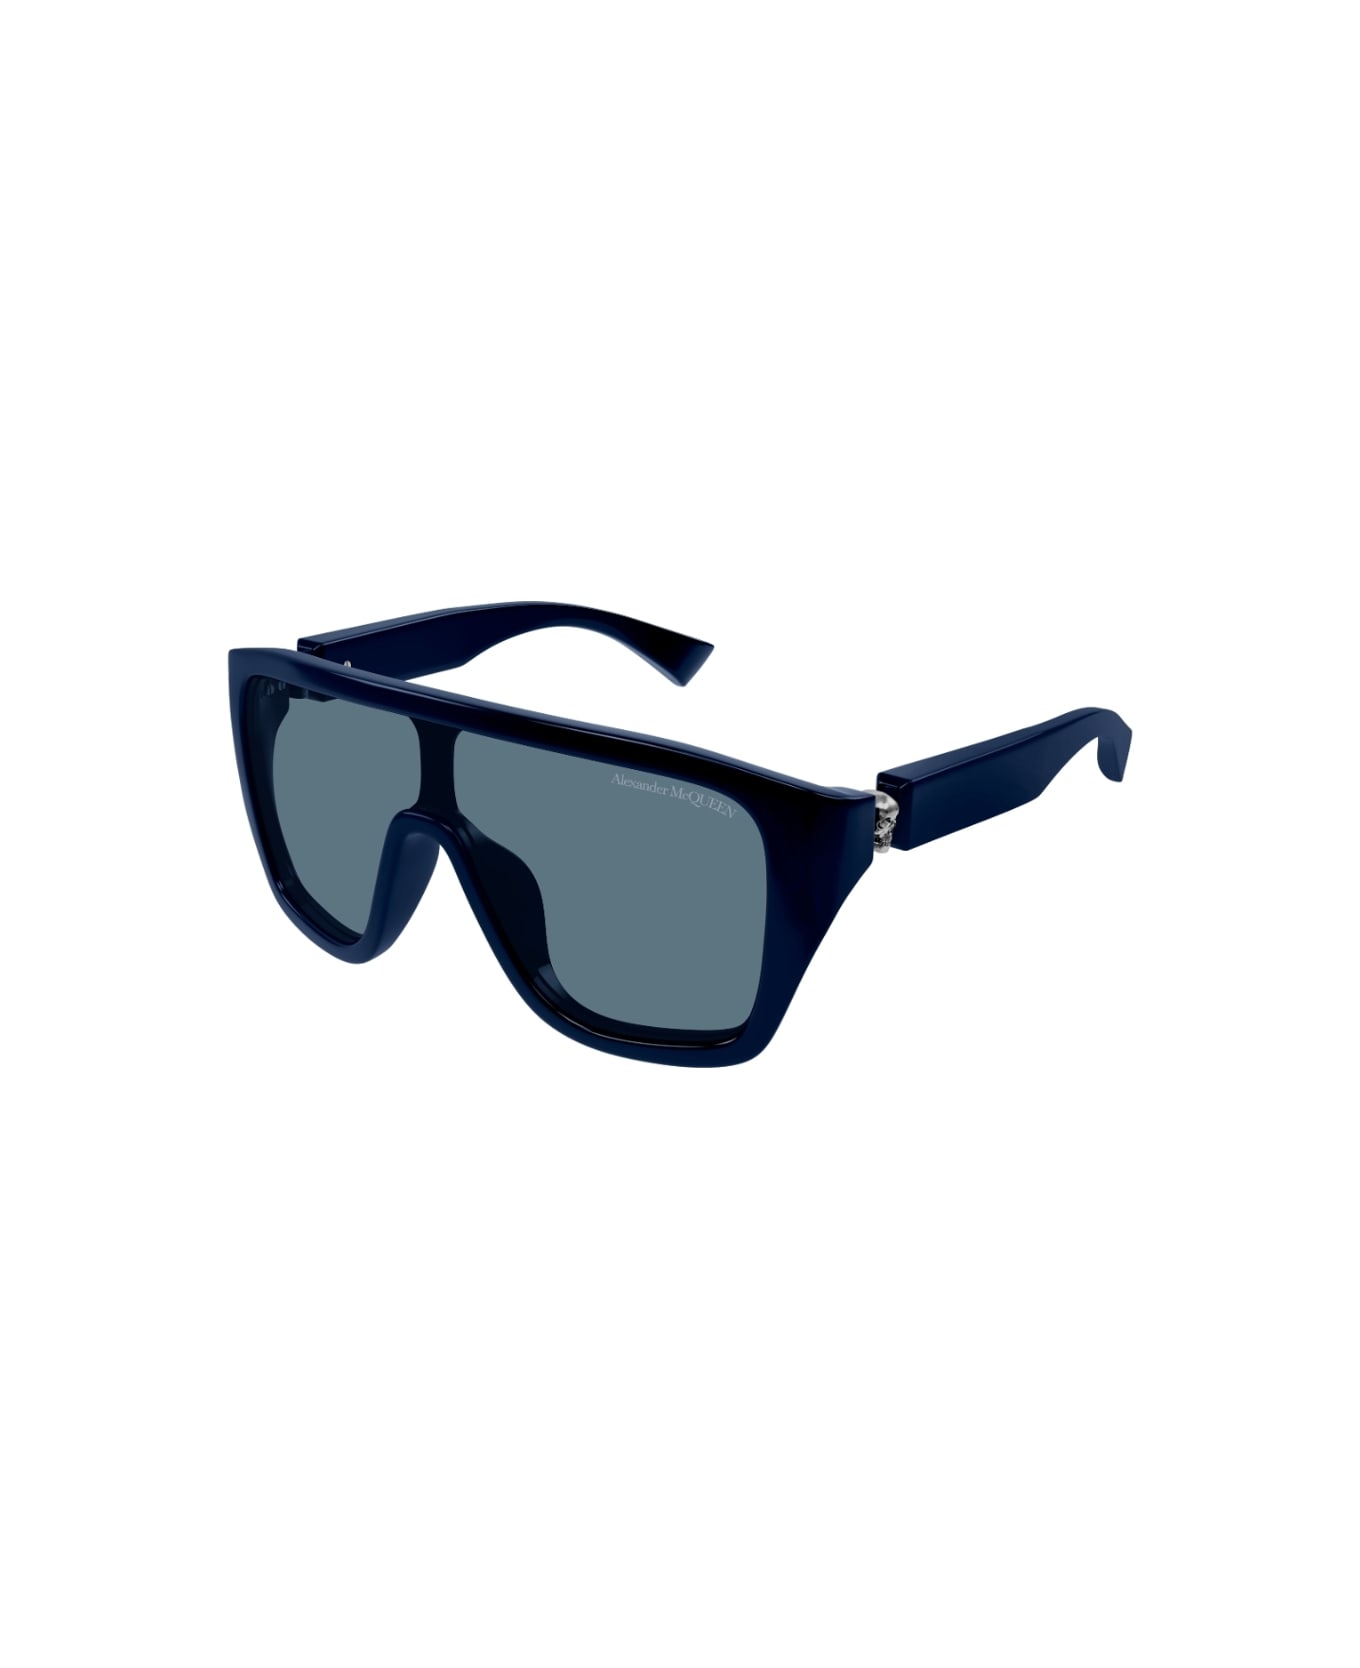 Alexander McQueen Eyewear AM0430s 003 Sunglasses